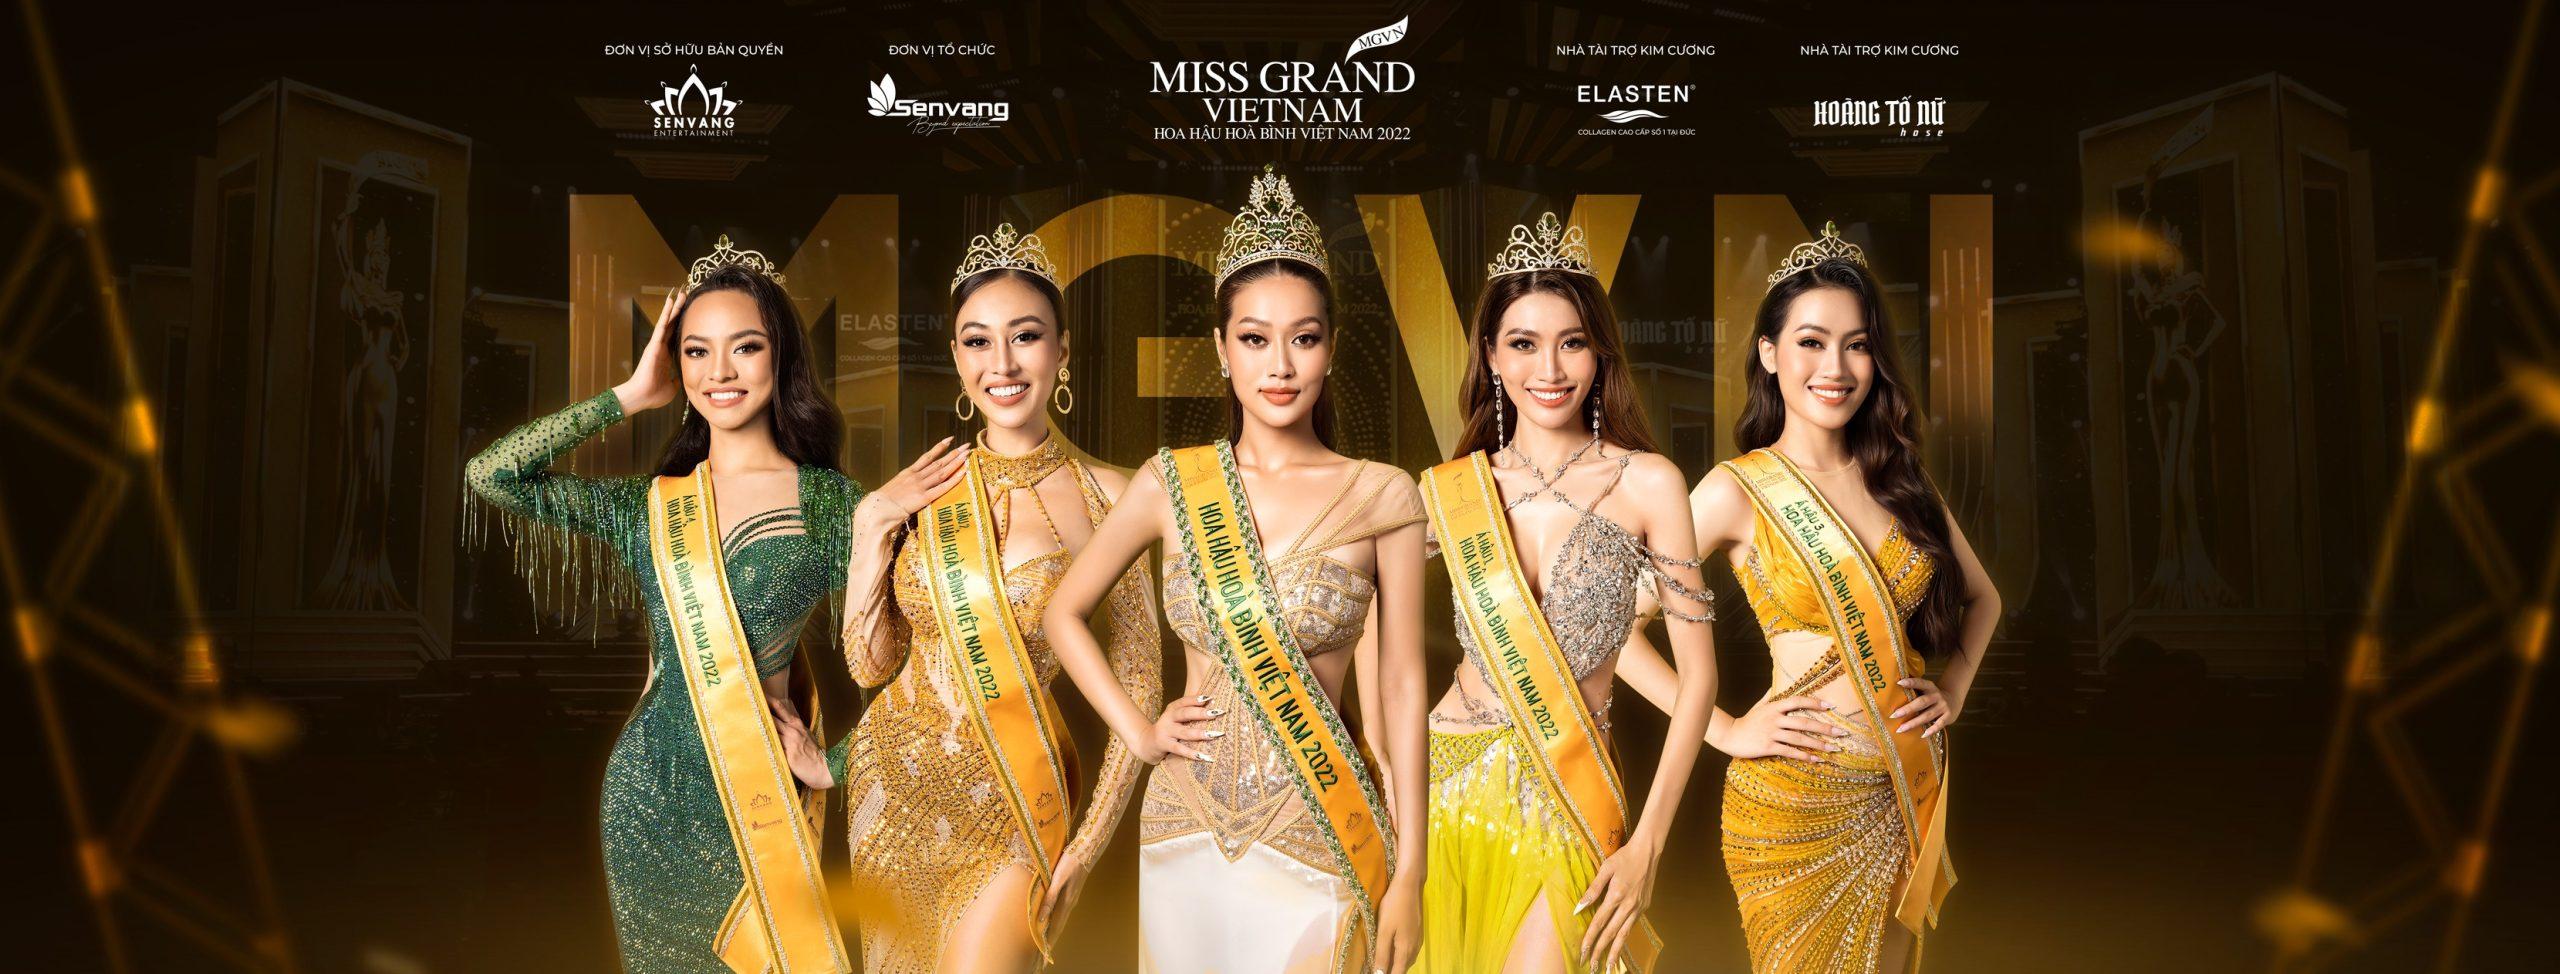 Miss Grand Vietnam 2022 Kết quả có đáng bị tranh cãi?